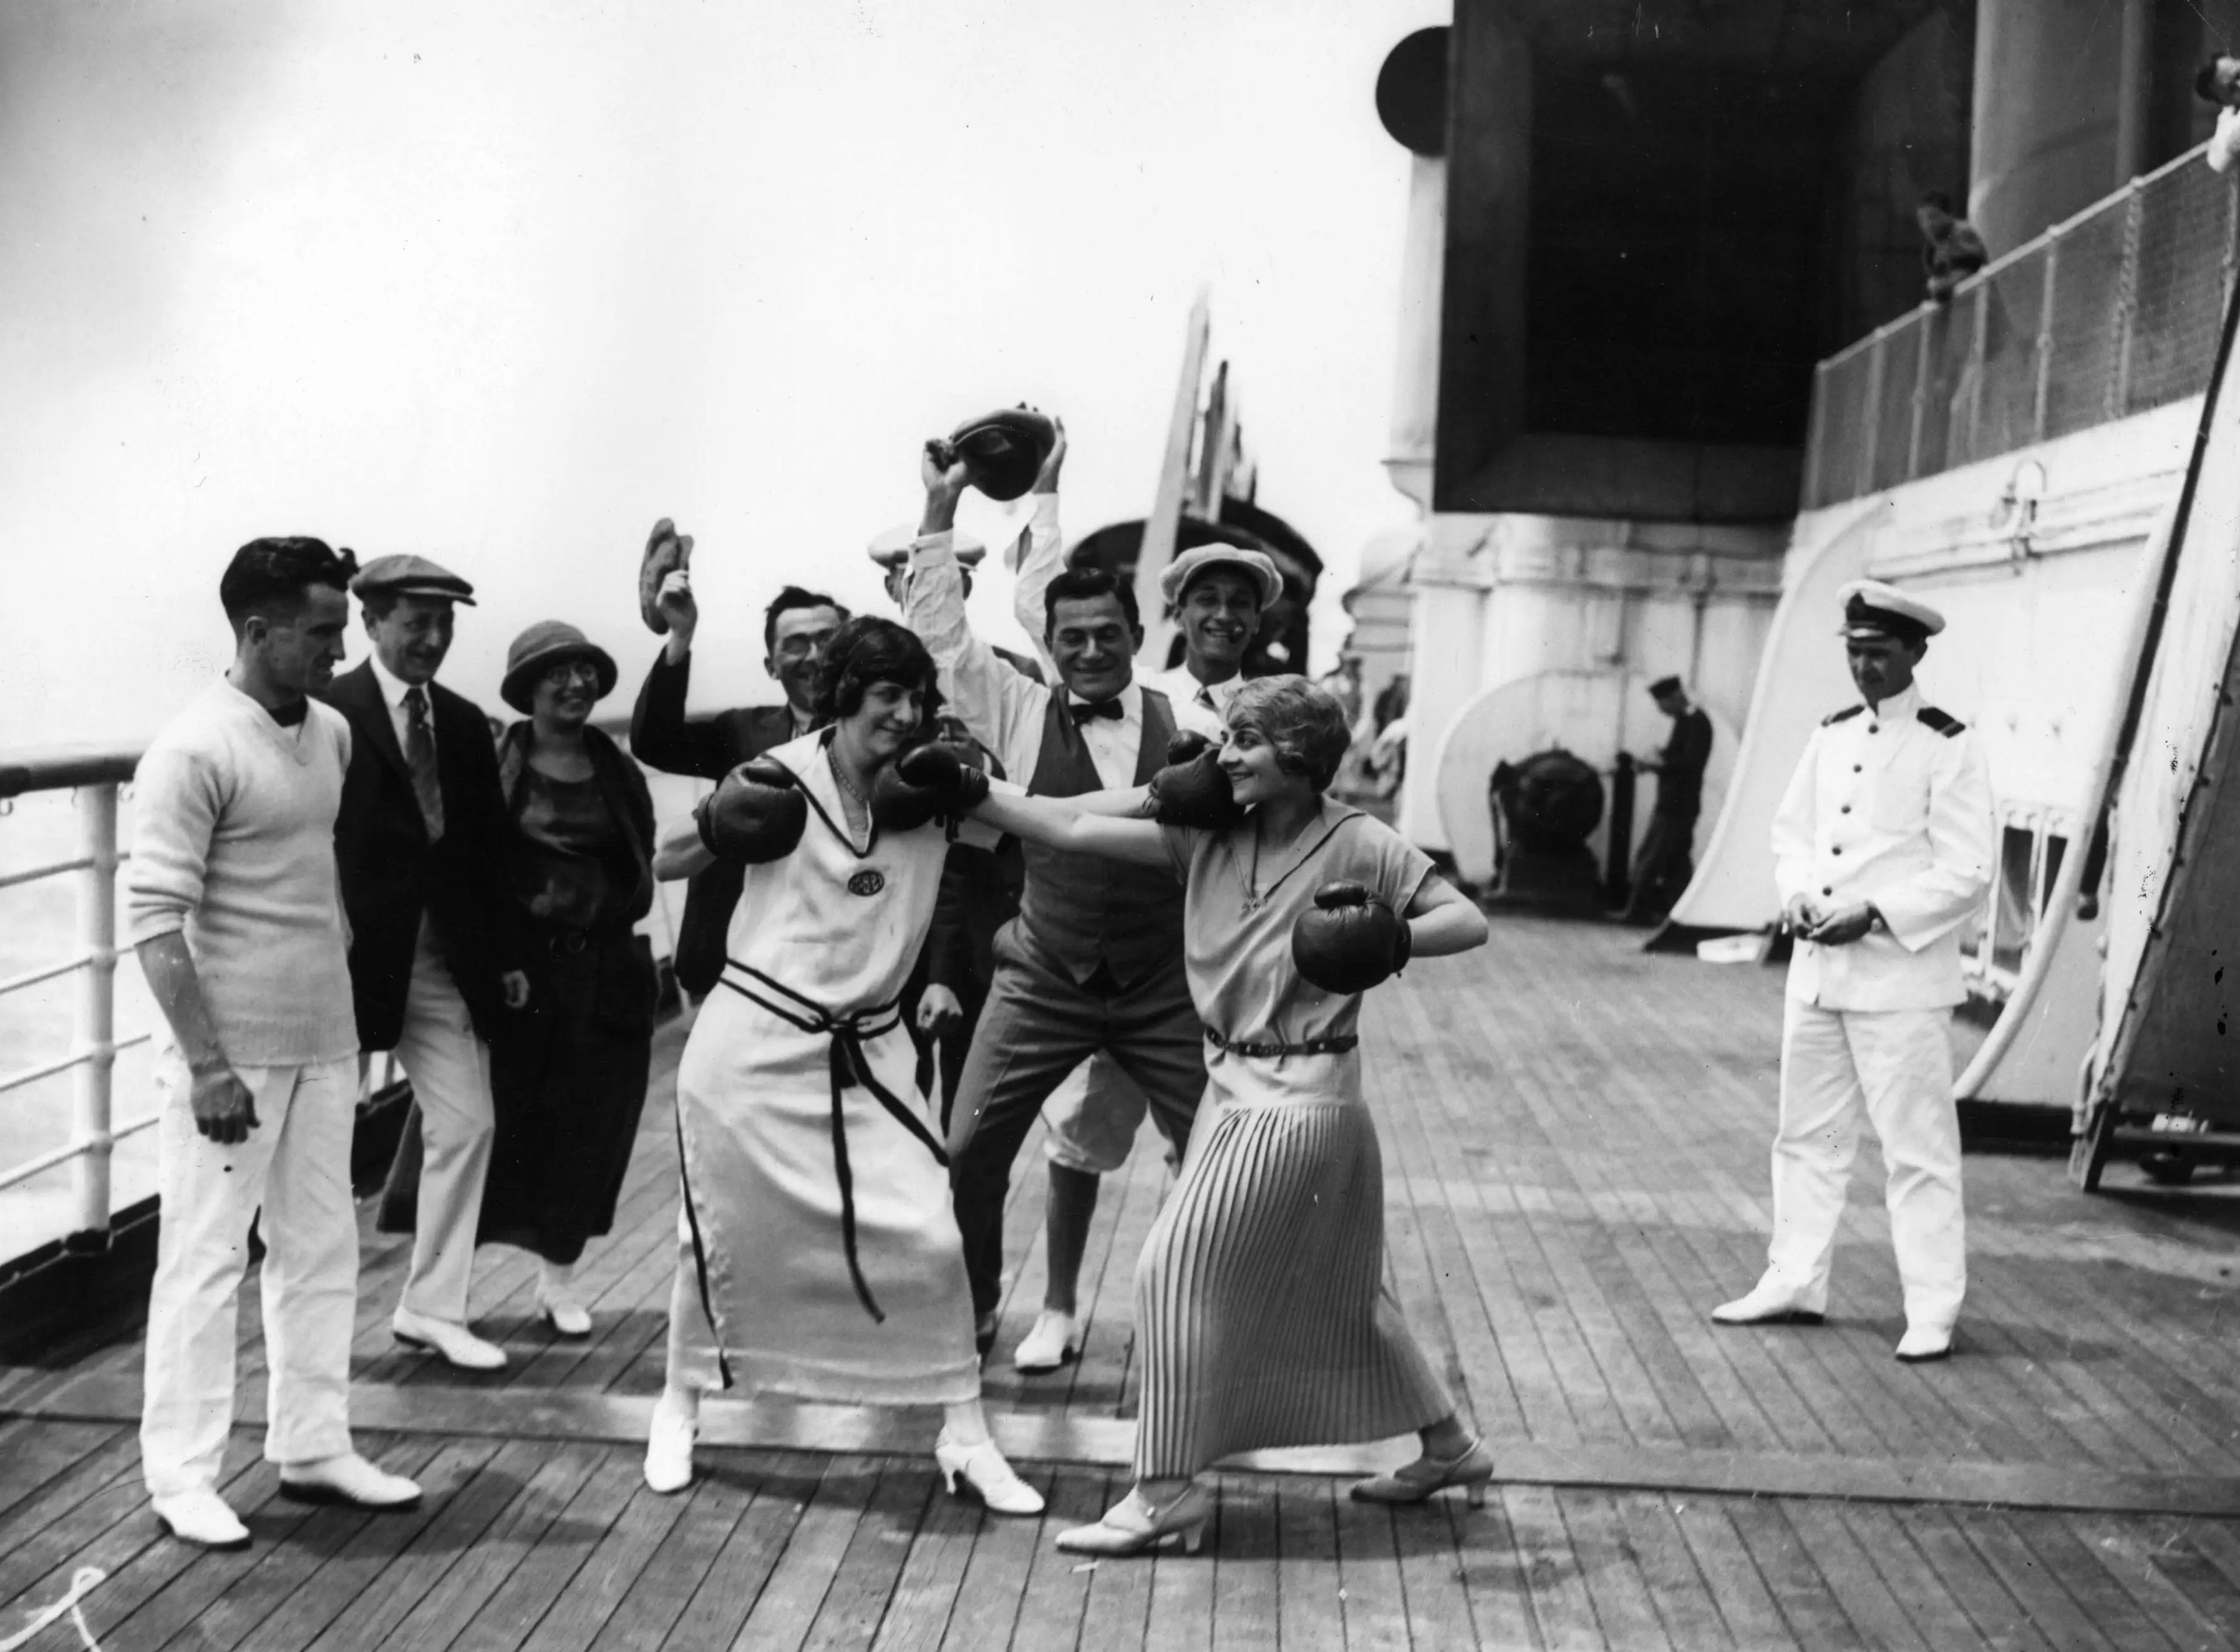 Pasajeras boxeando a bordo del transatlántico Berengaria de Cunard, observadas por otros pasajeros y un oficial, hacia julio de 1923.